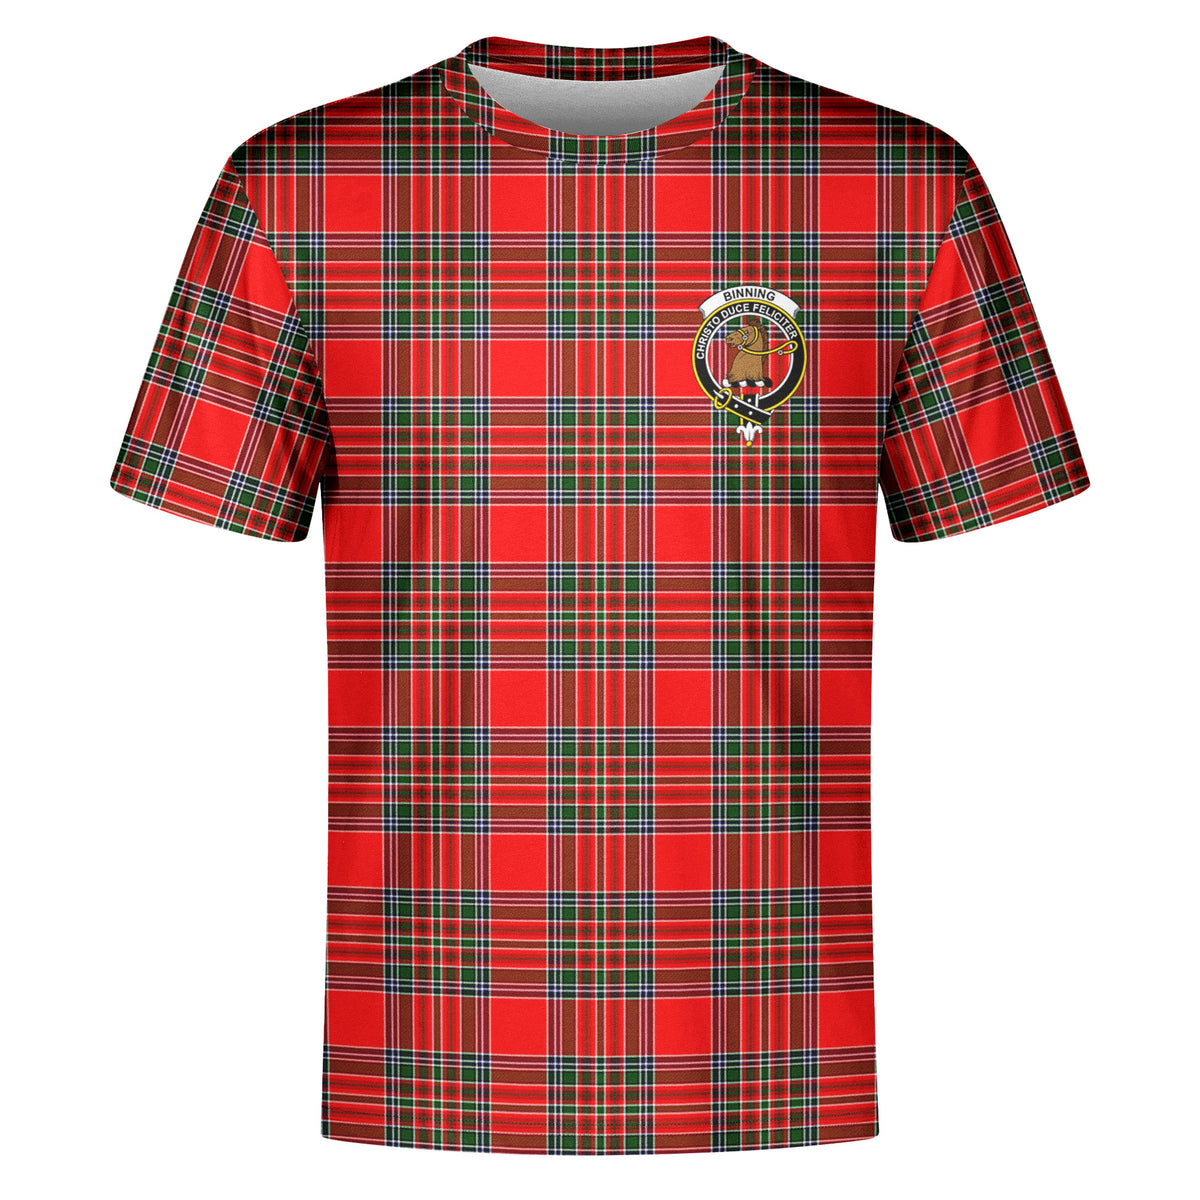 Binning (of Wallifoord) Tartan Crest T-shirt